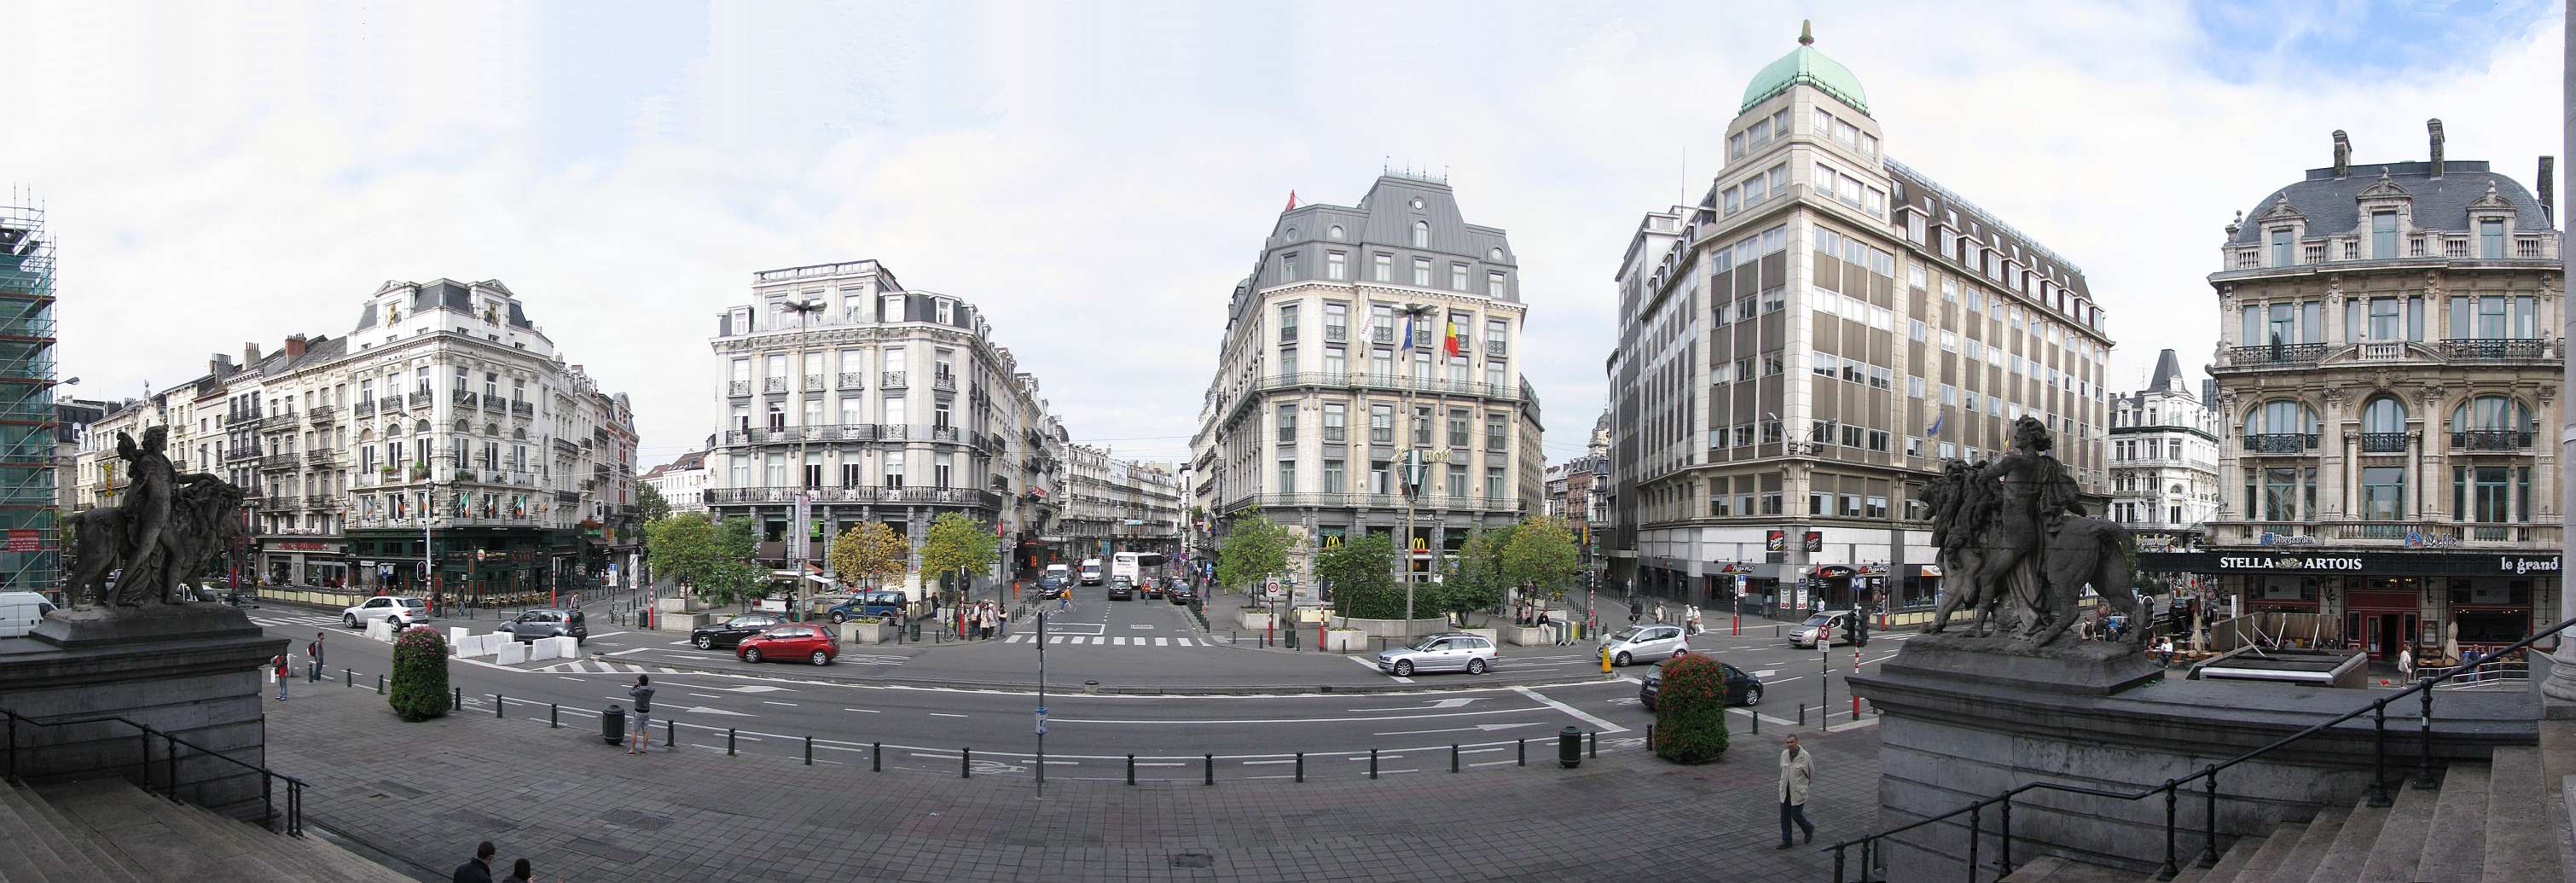 Брюссель. Источник: Викимедиа